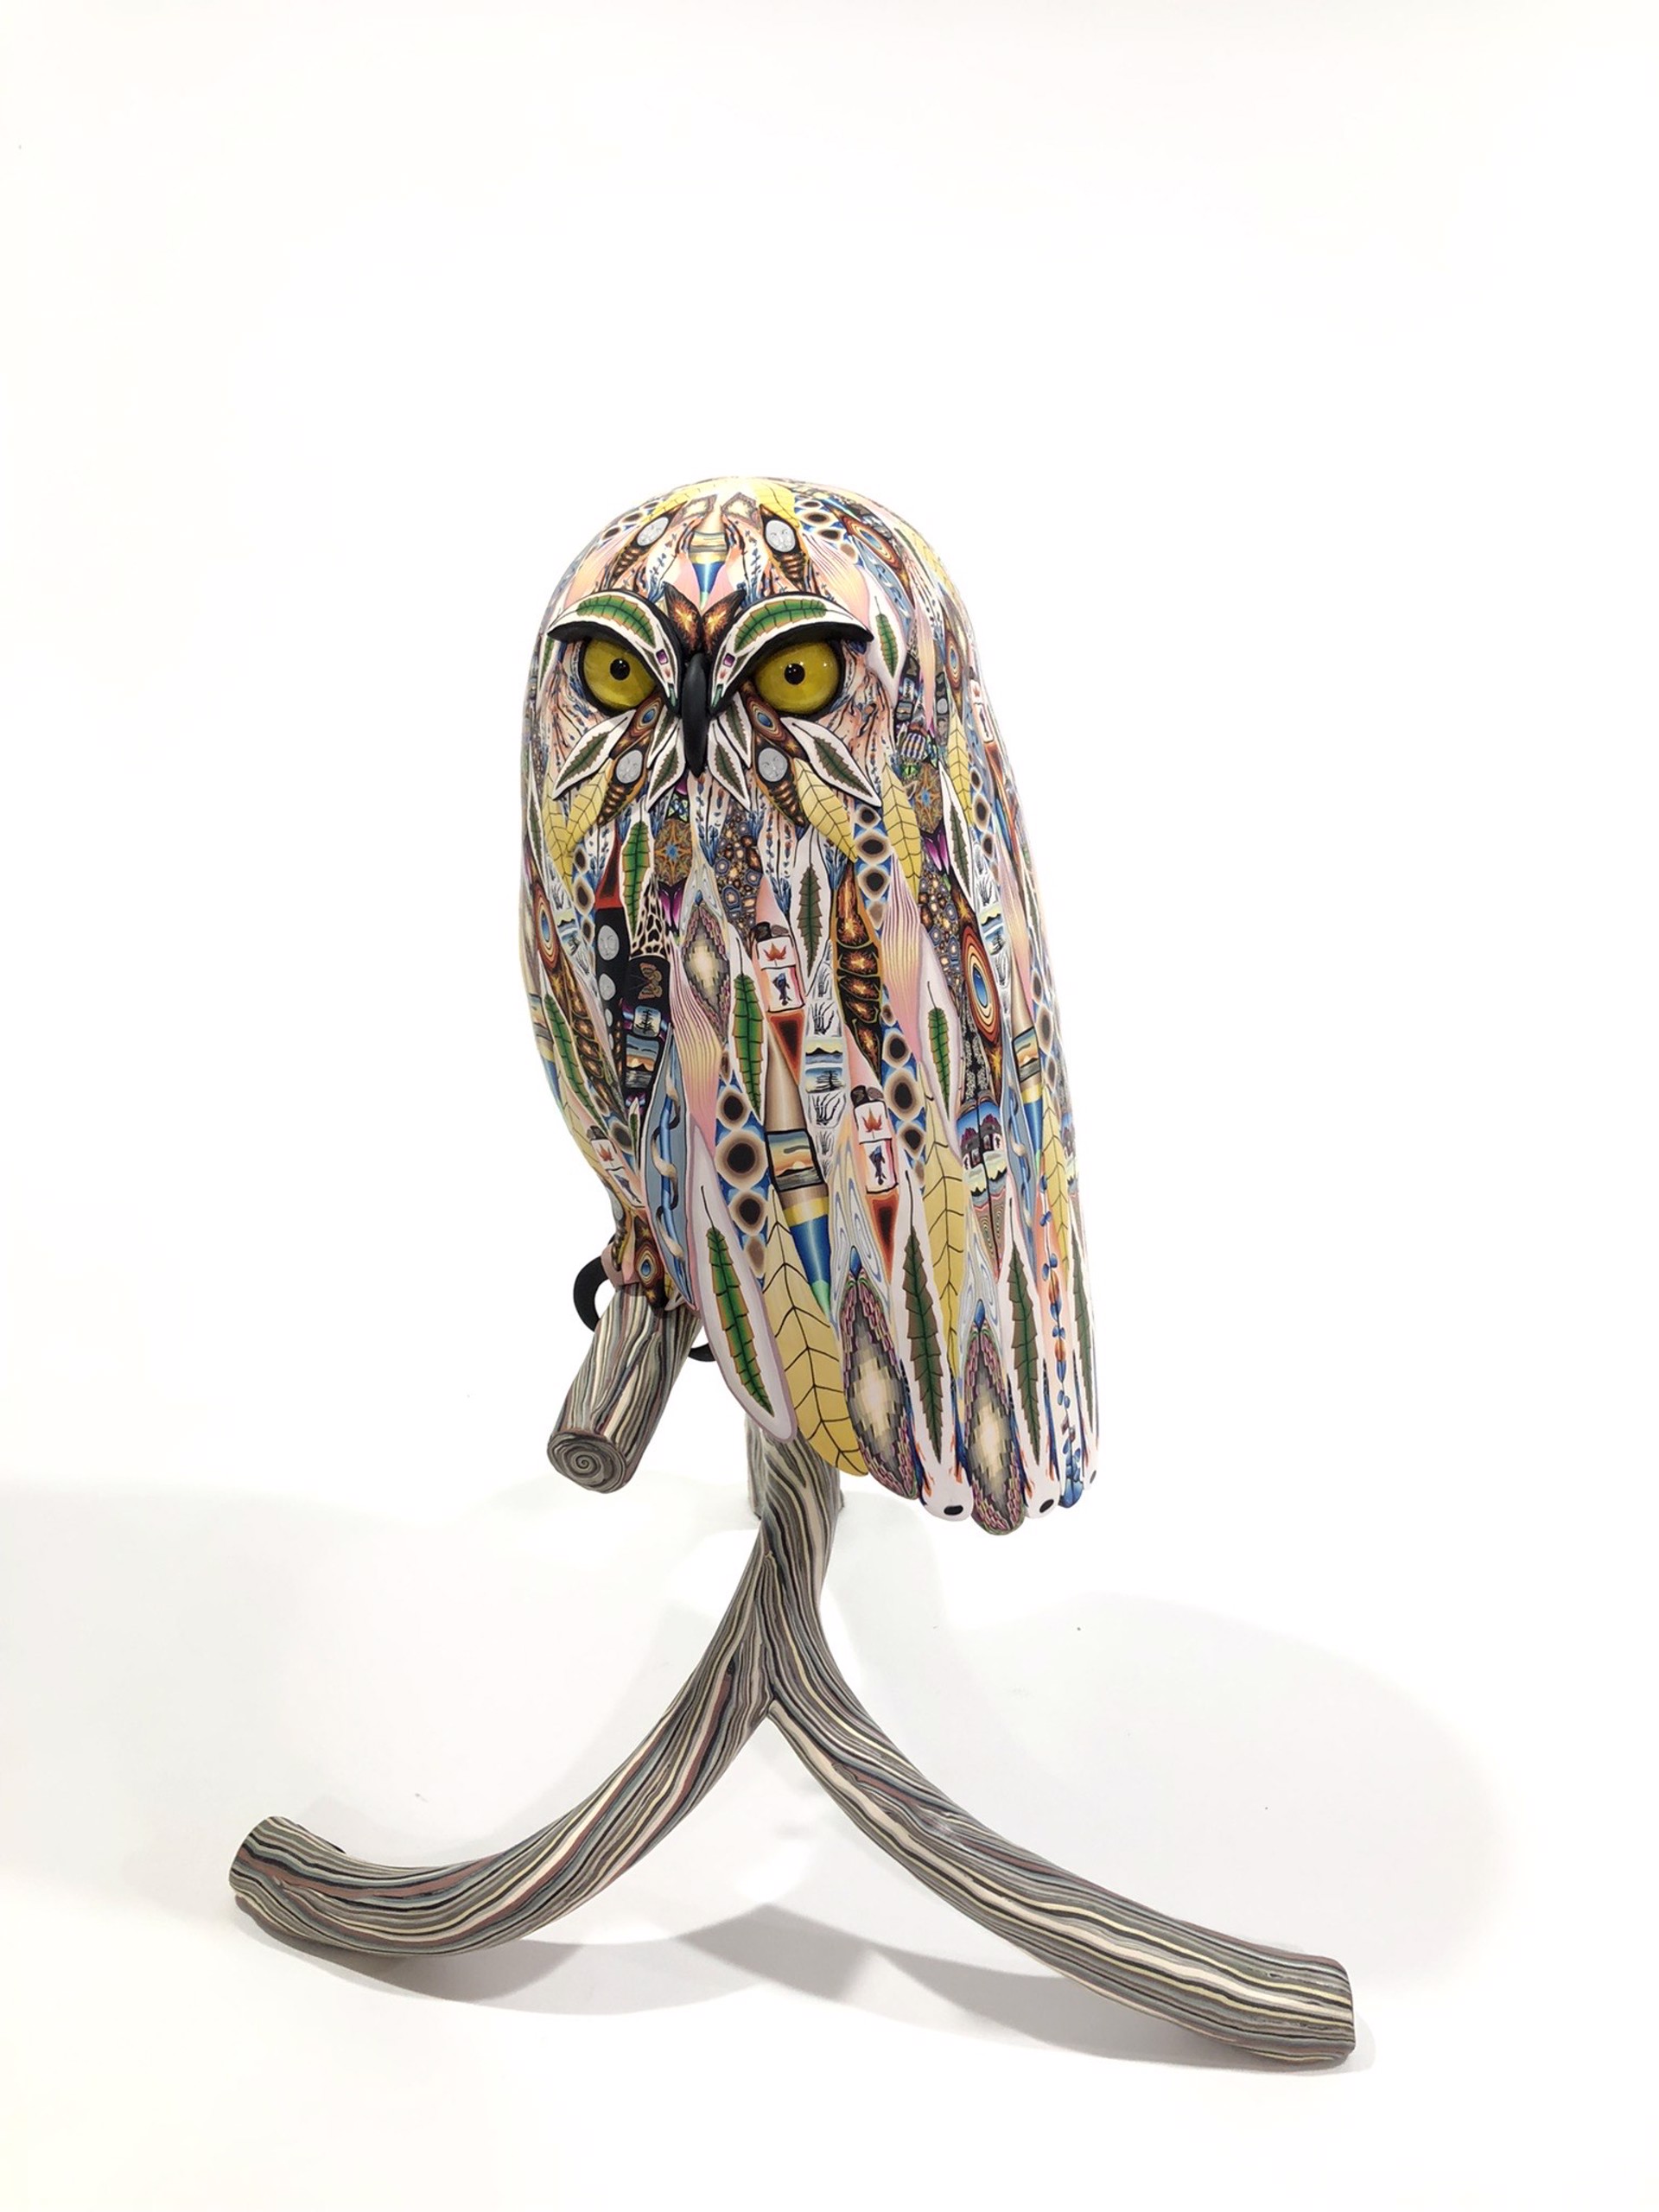 Owl by Adam Thomas Rees